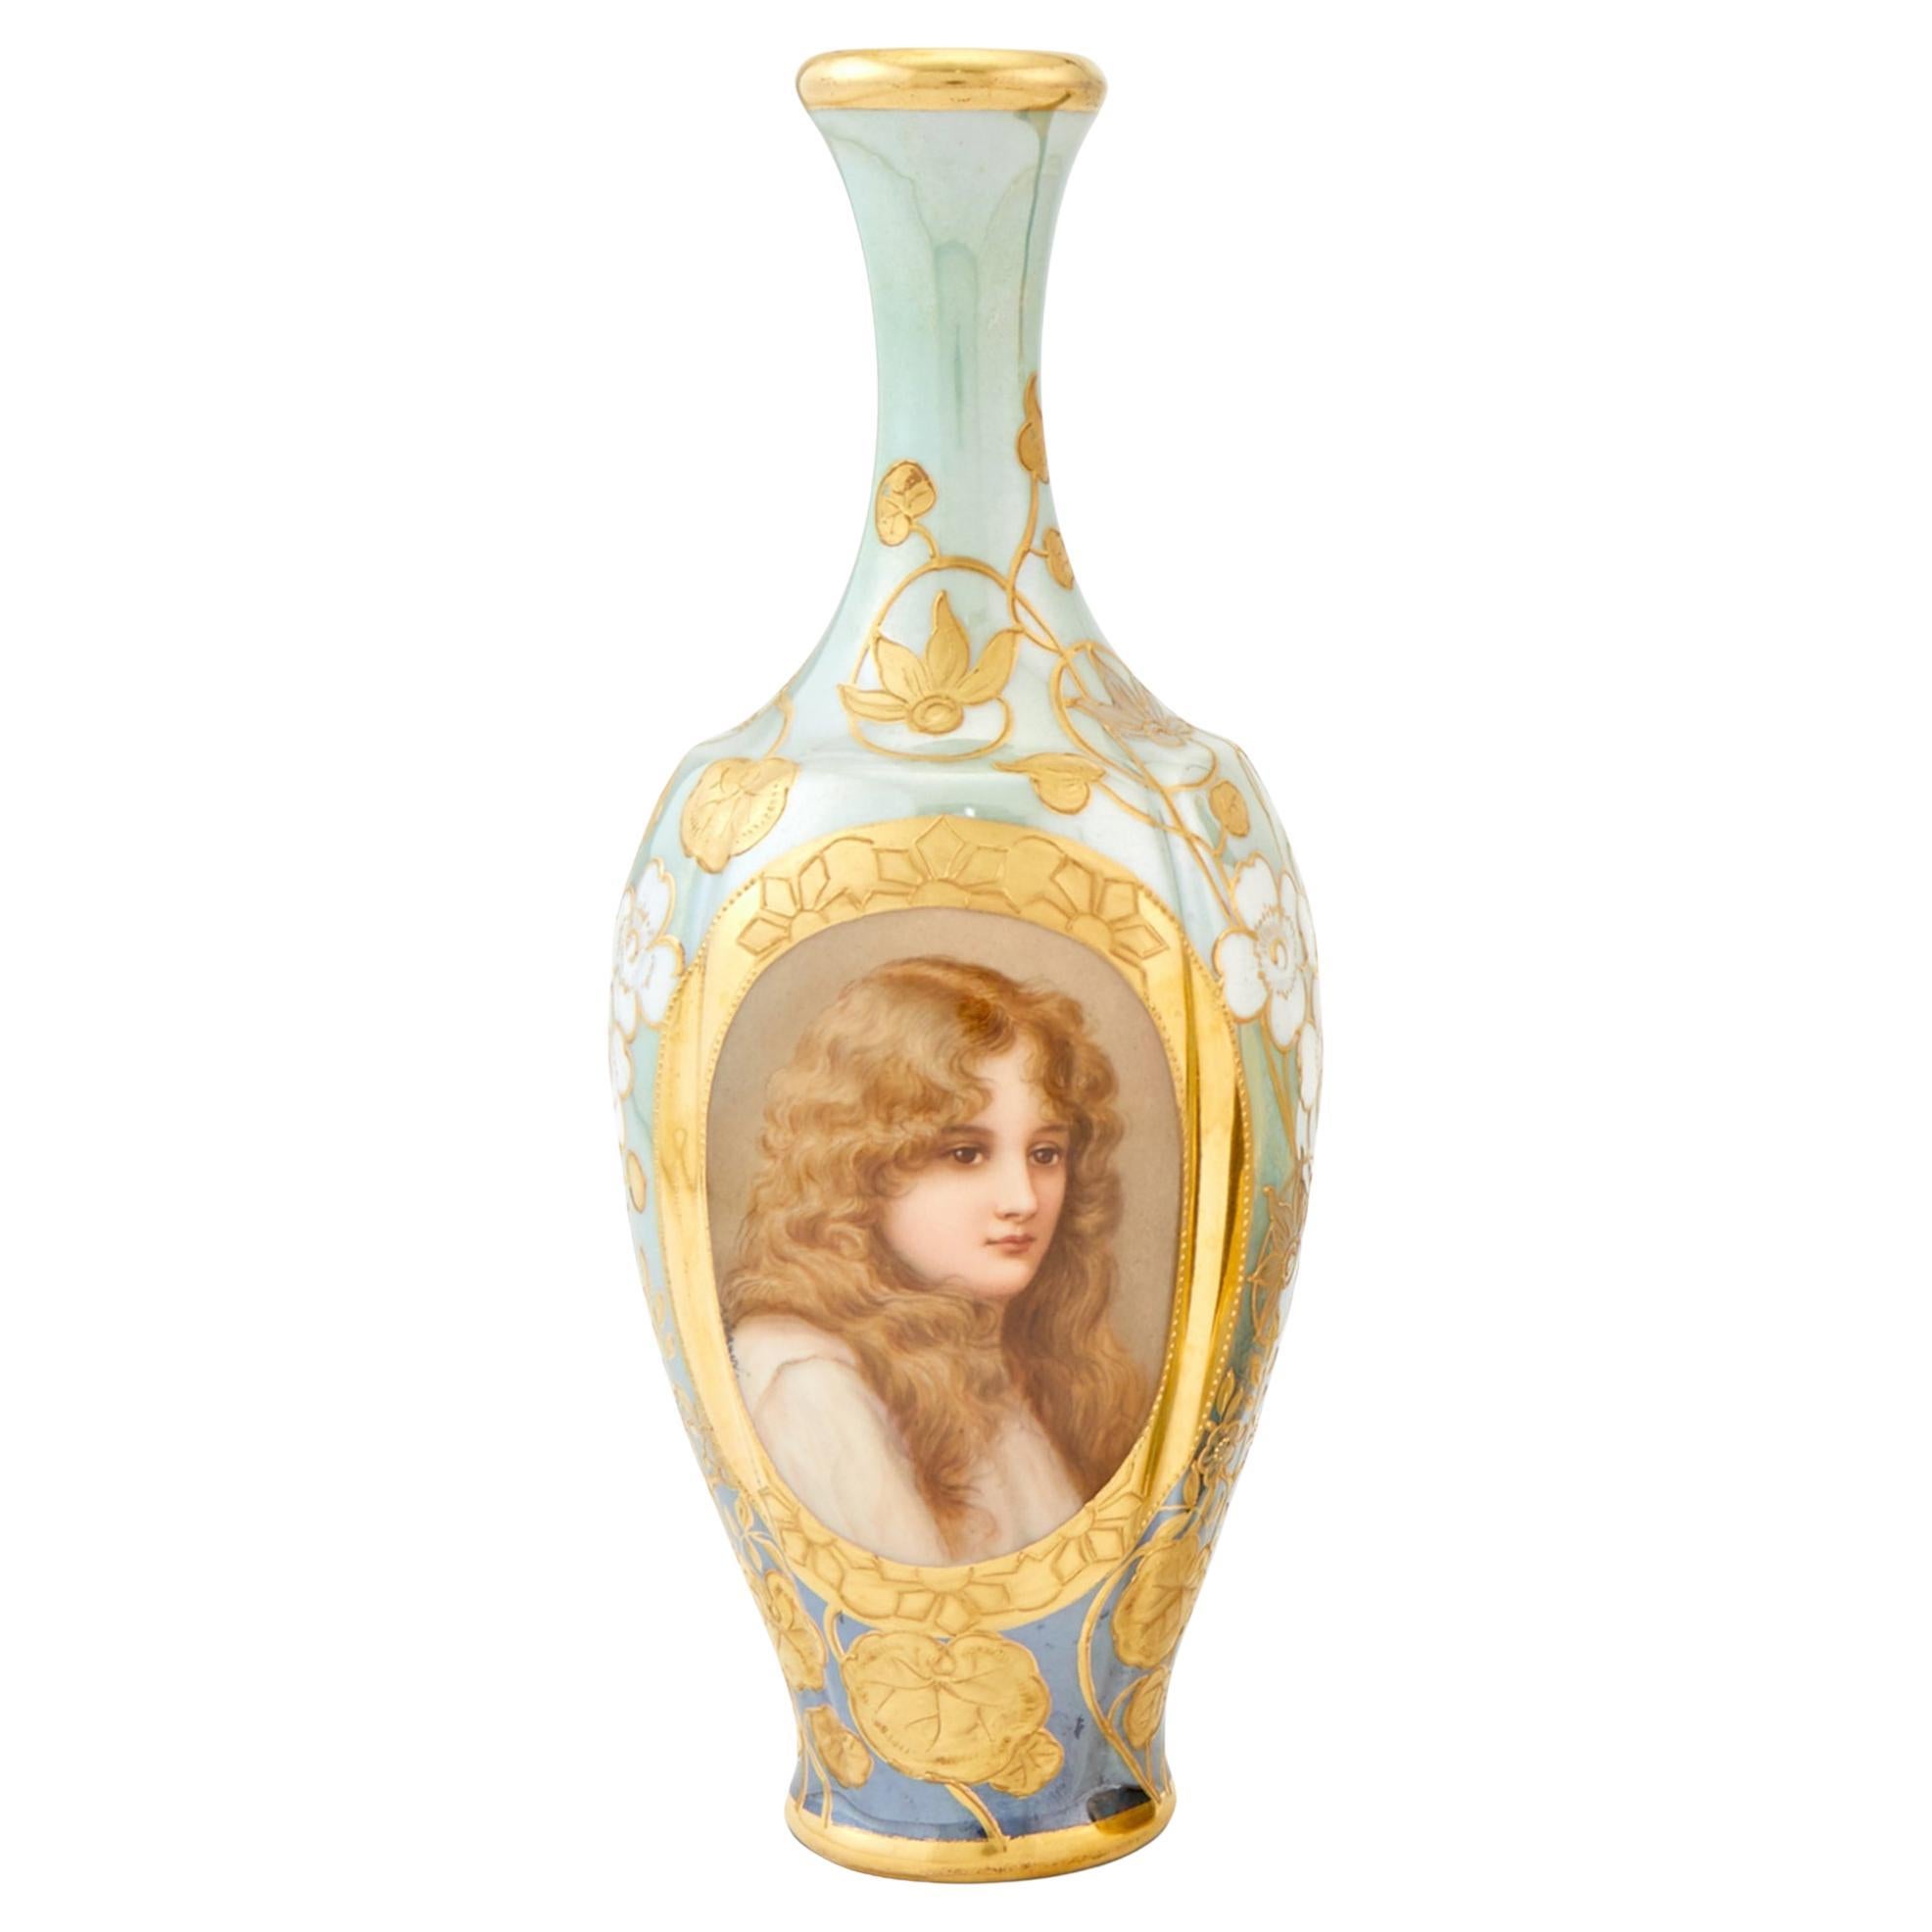  Vase de cabinet portraitiste Royal Vienna Art Nouveau peint à la main